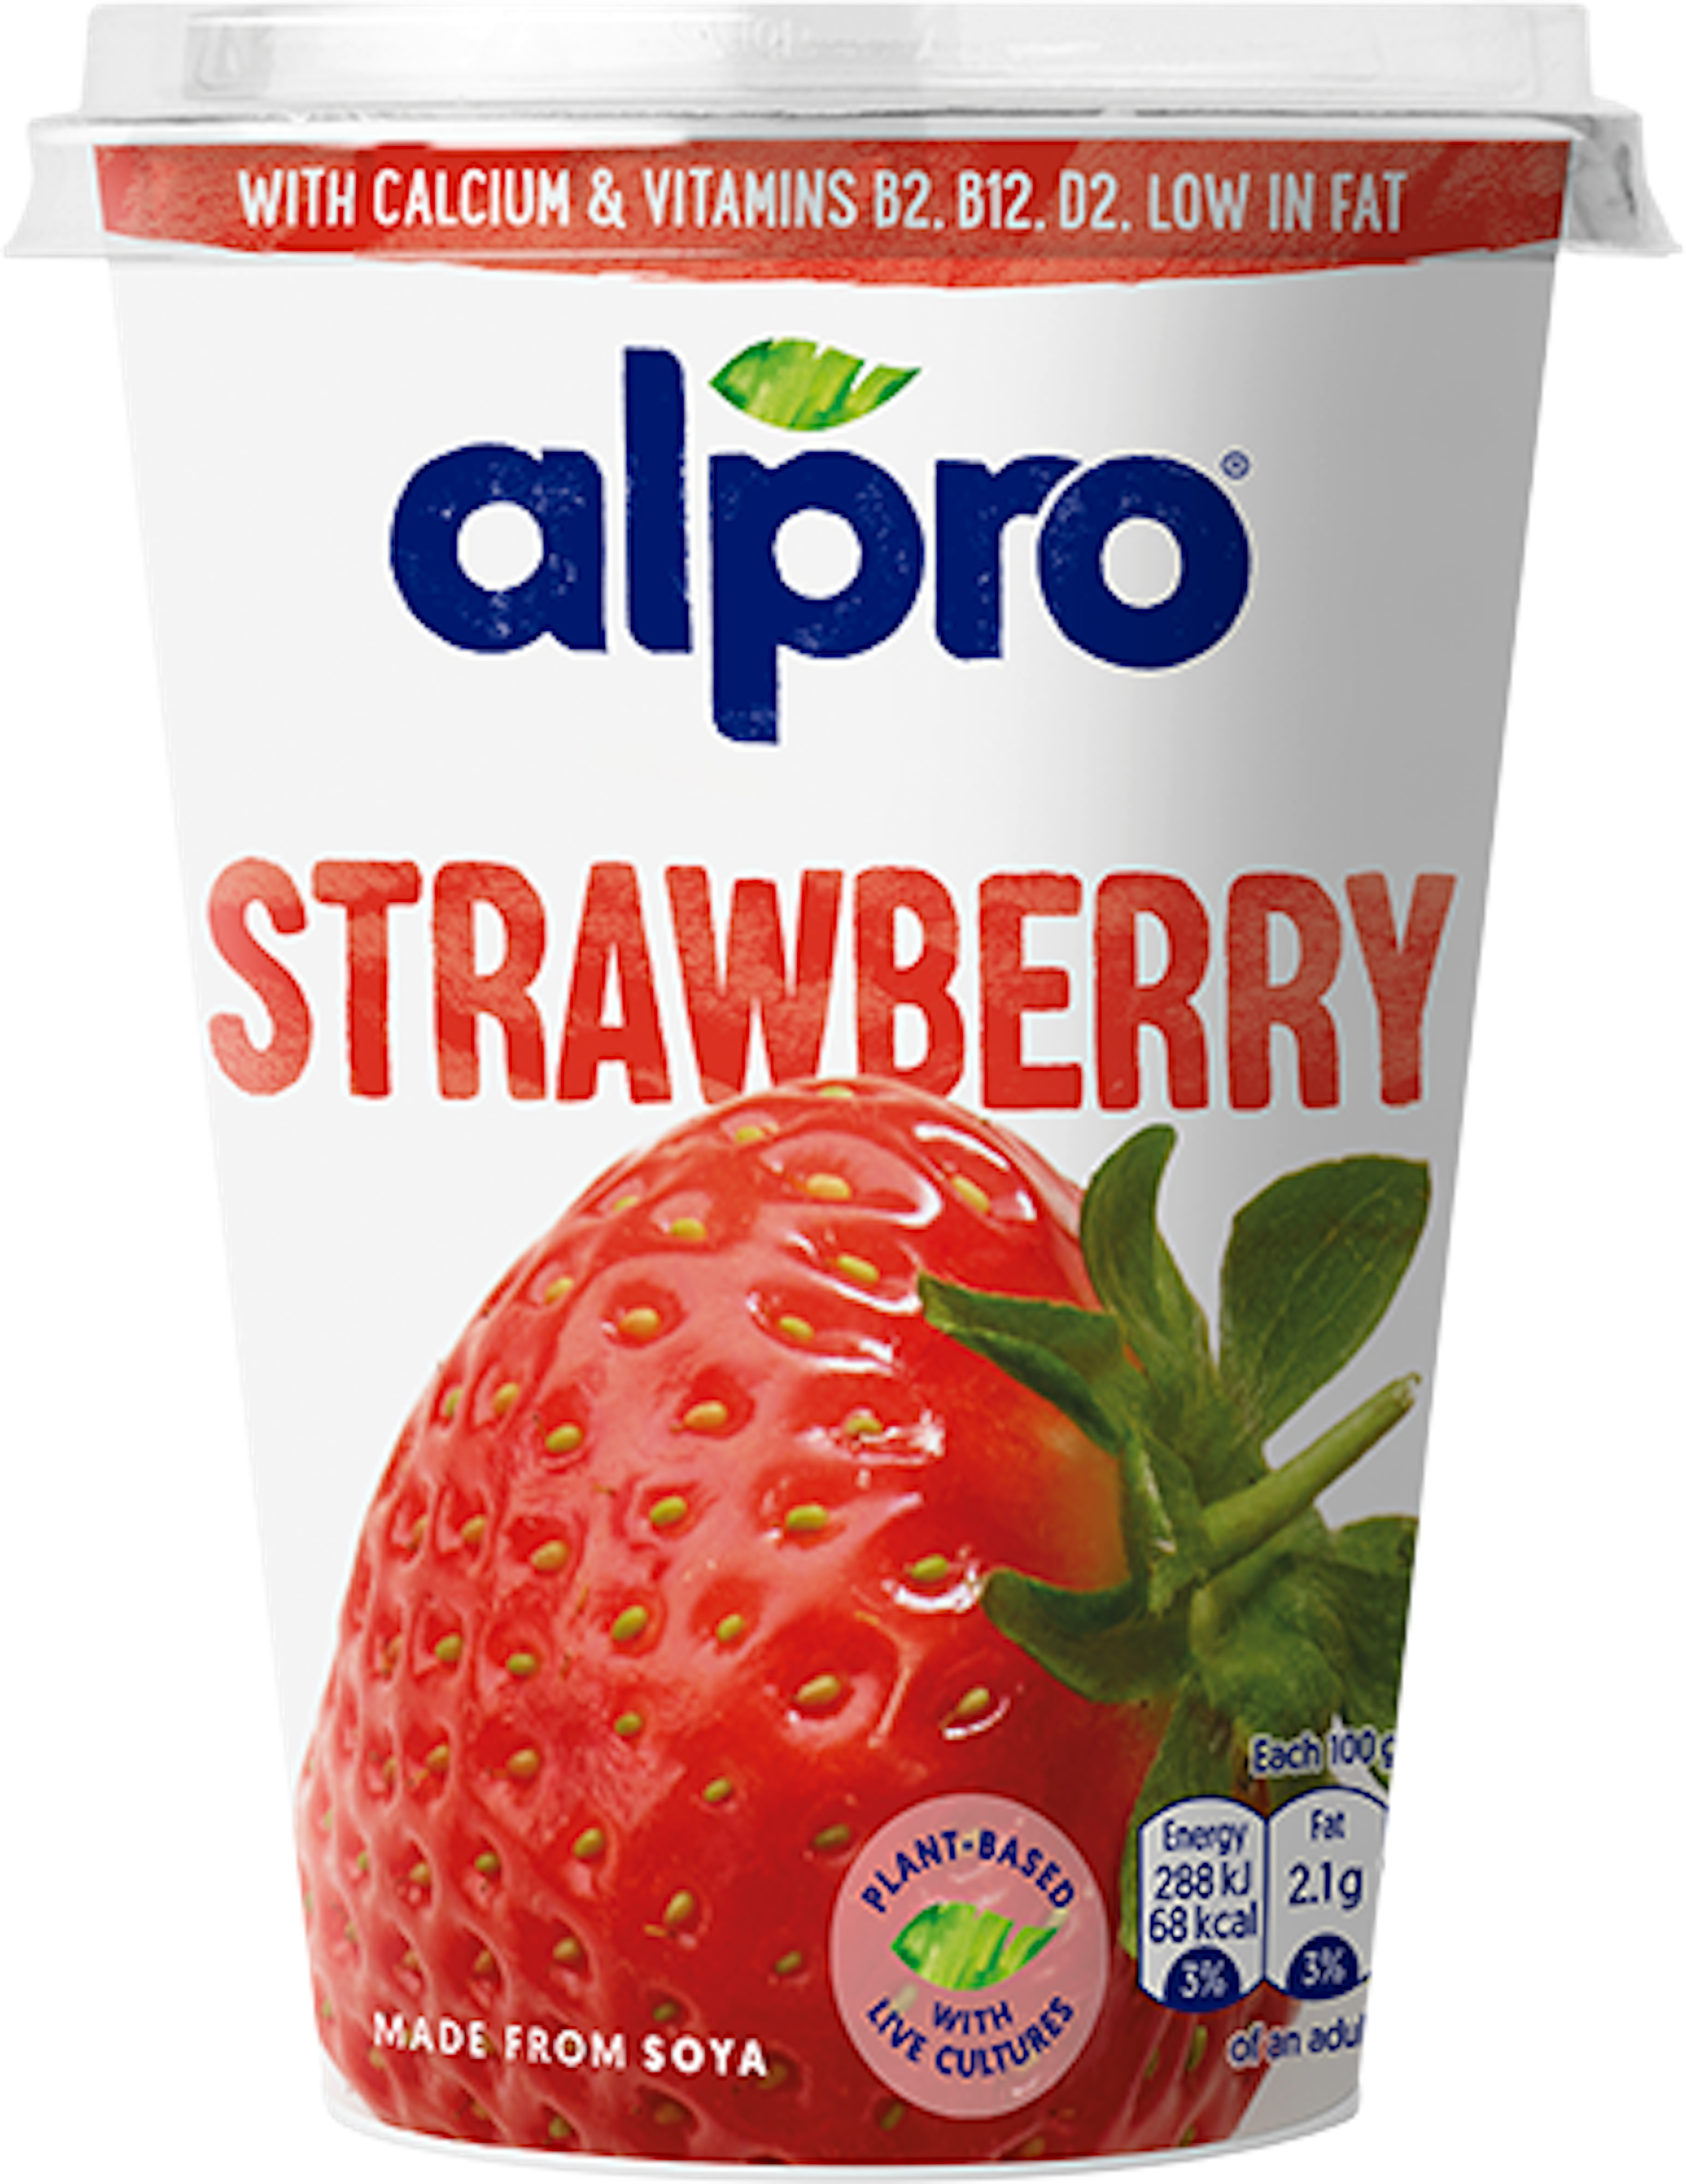 Strawberry Plant-based Alternative to Yoghurt